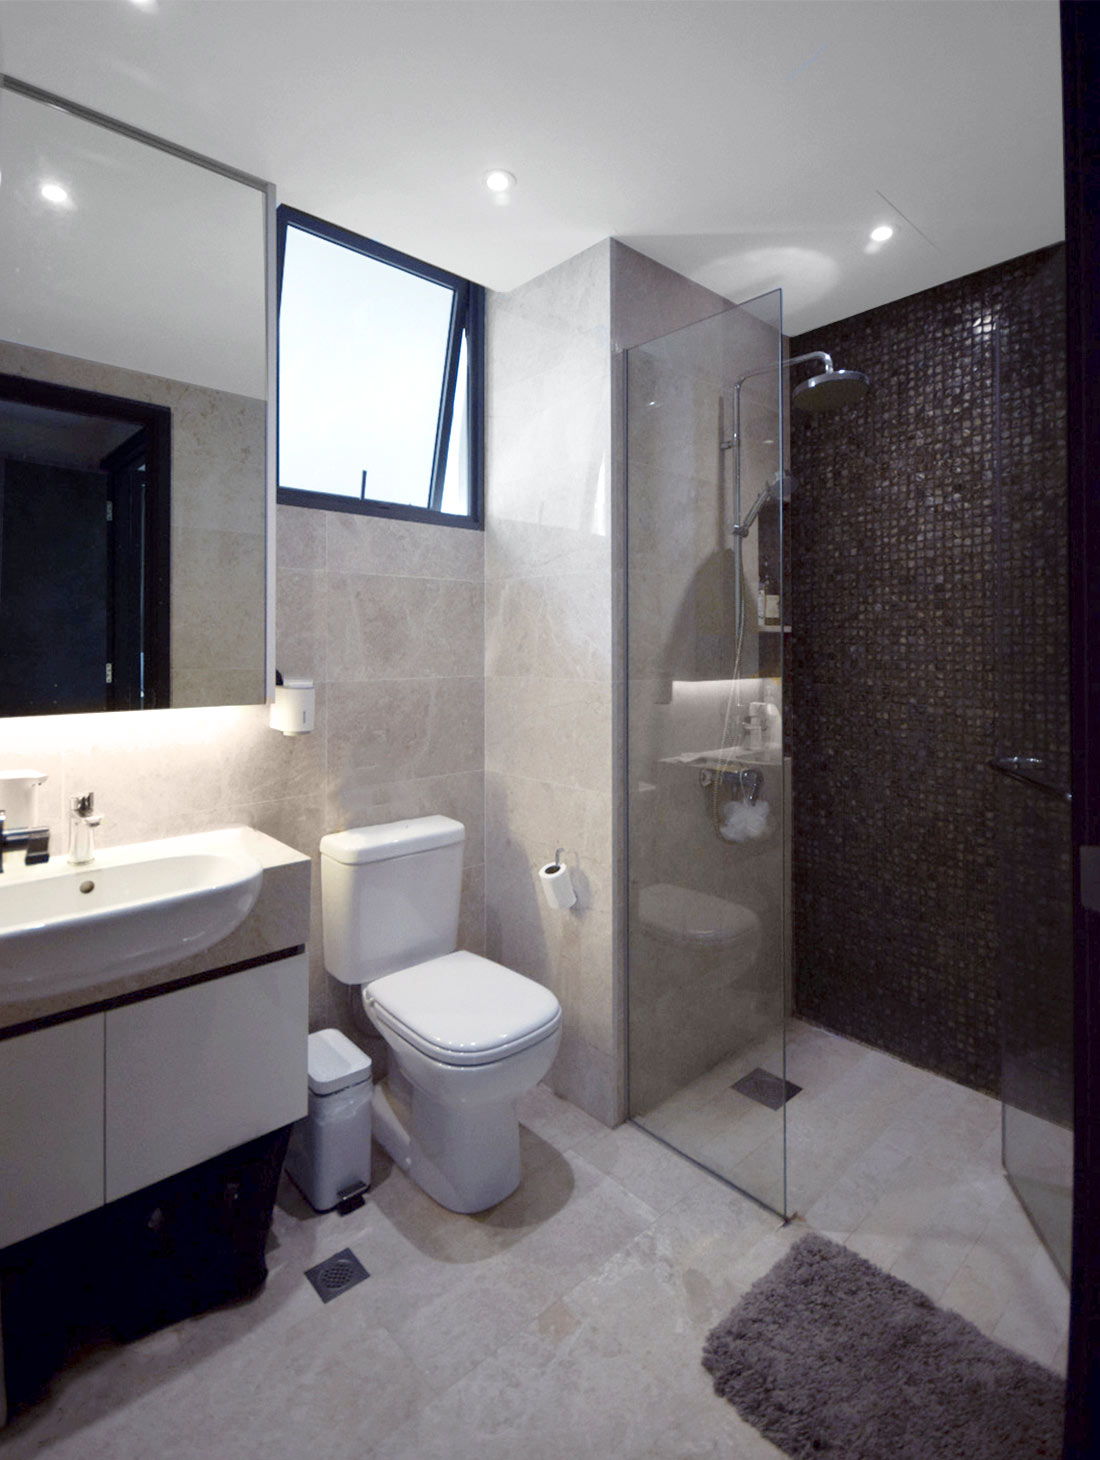 La Fiesta Condo Toilet Renovation Modern Grey Interior Design